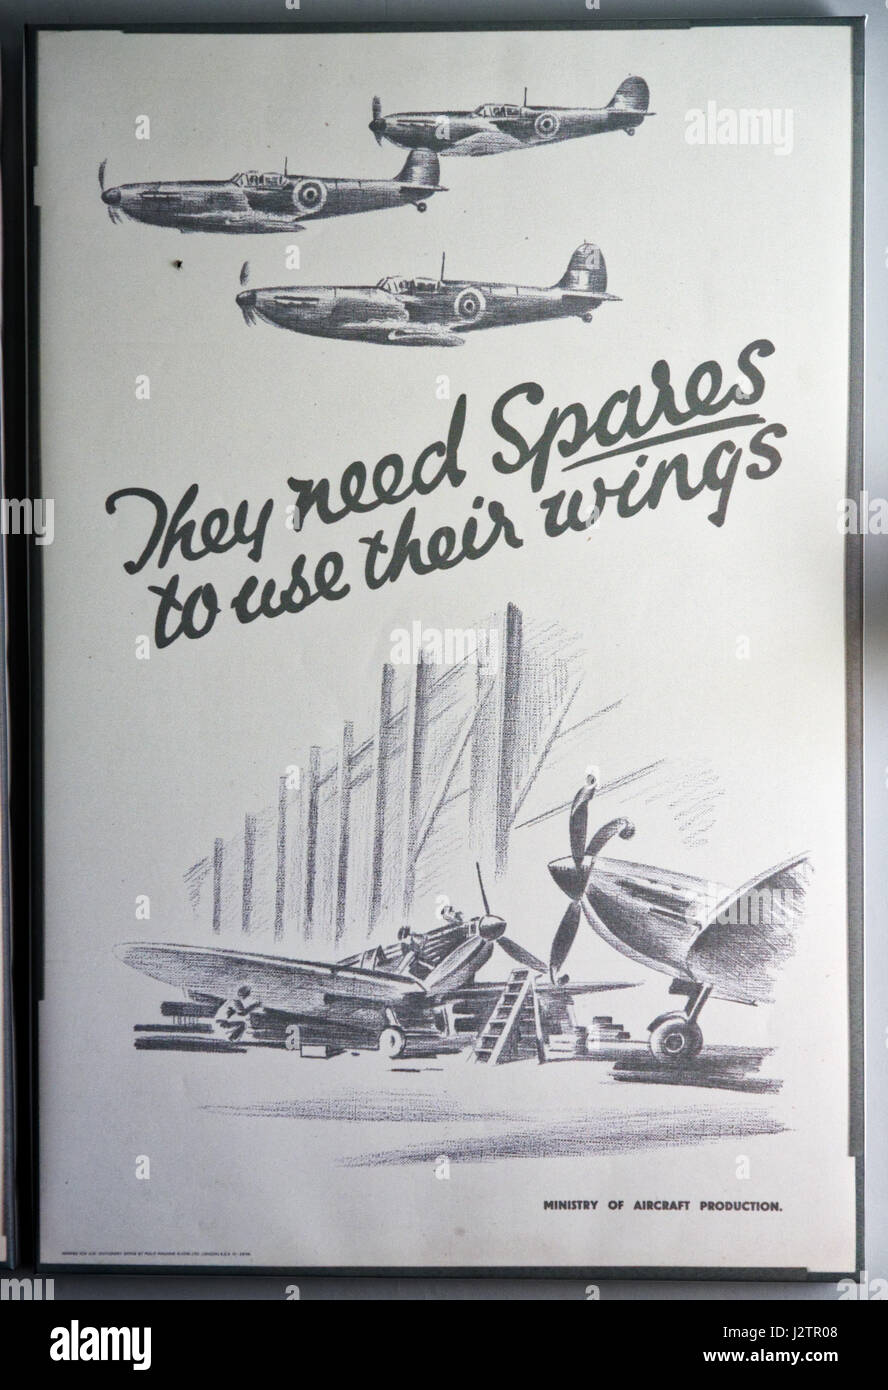 Sie benötigen Ersatzteile zu verwenden ihre Flügel: einen zweiten Weltkrieg Propagandaplakat unterstützende Flugzeug Mechaniker und Reparatur-Teams Stockfoto